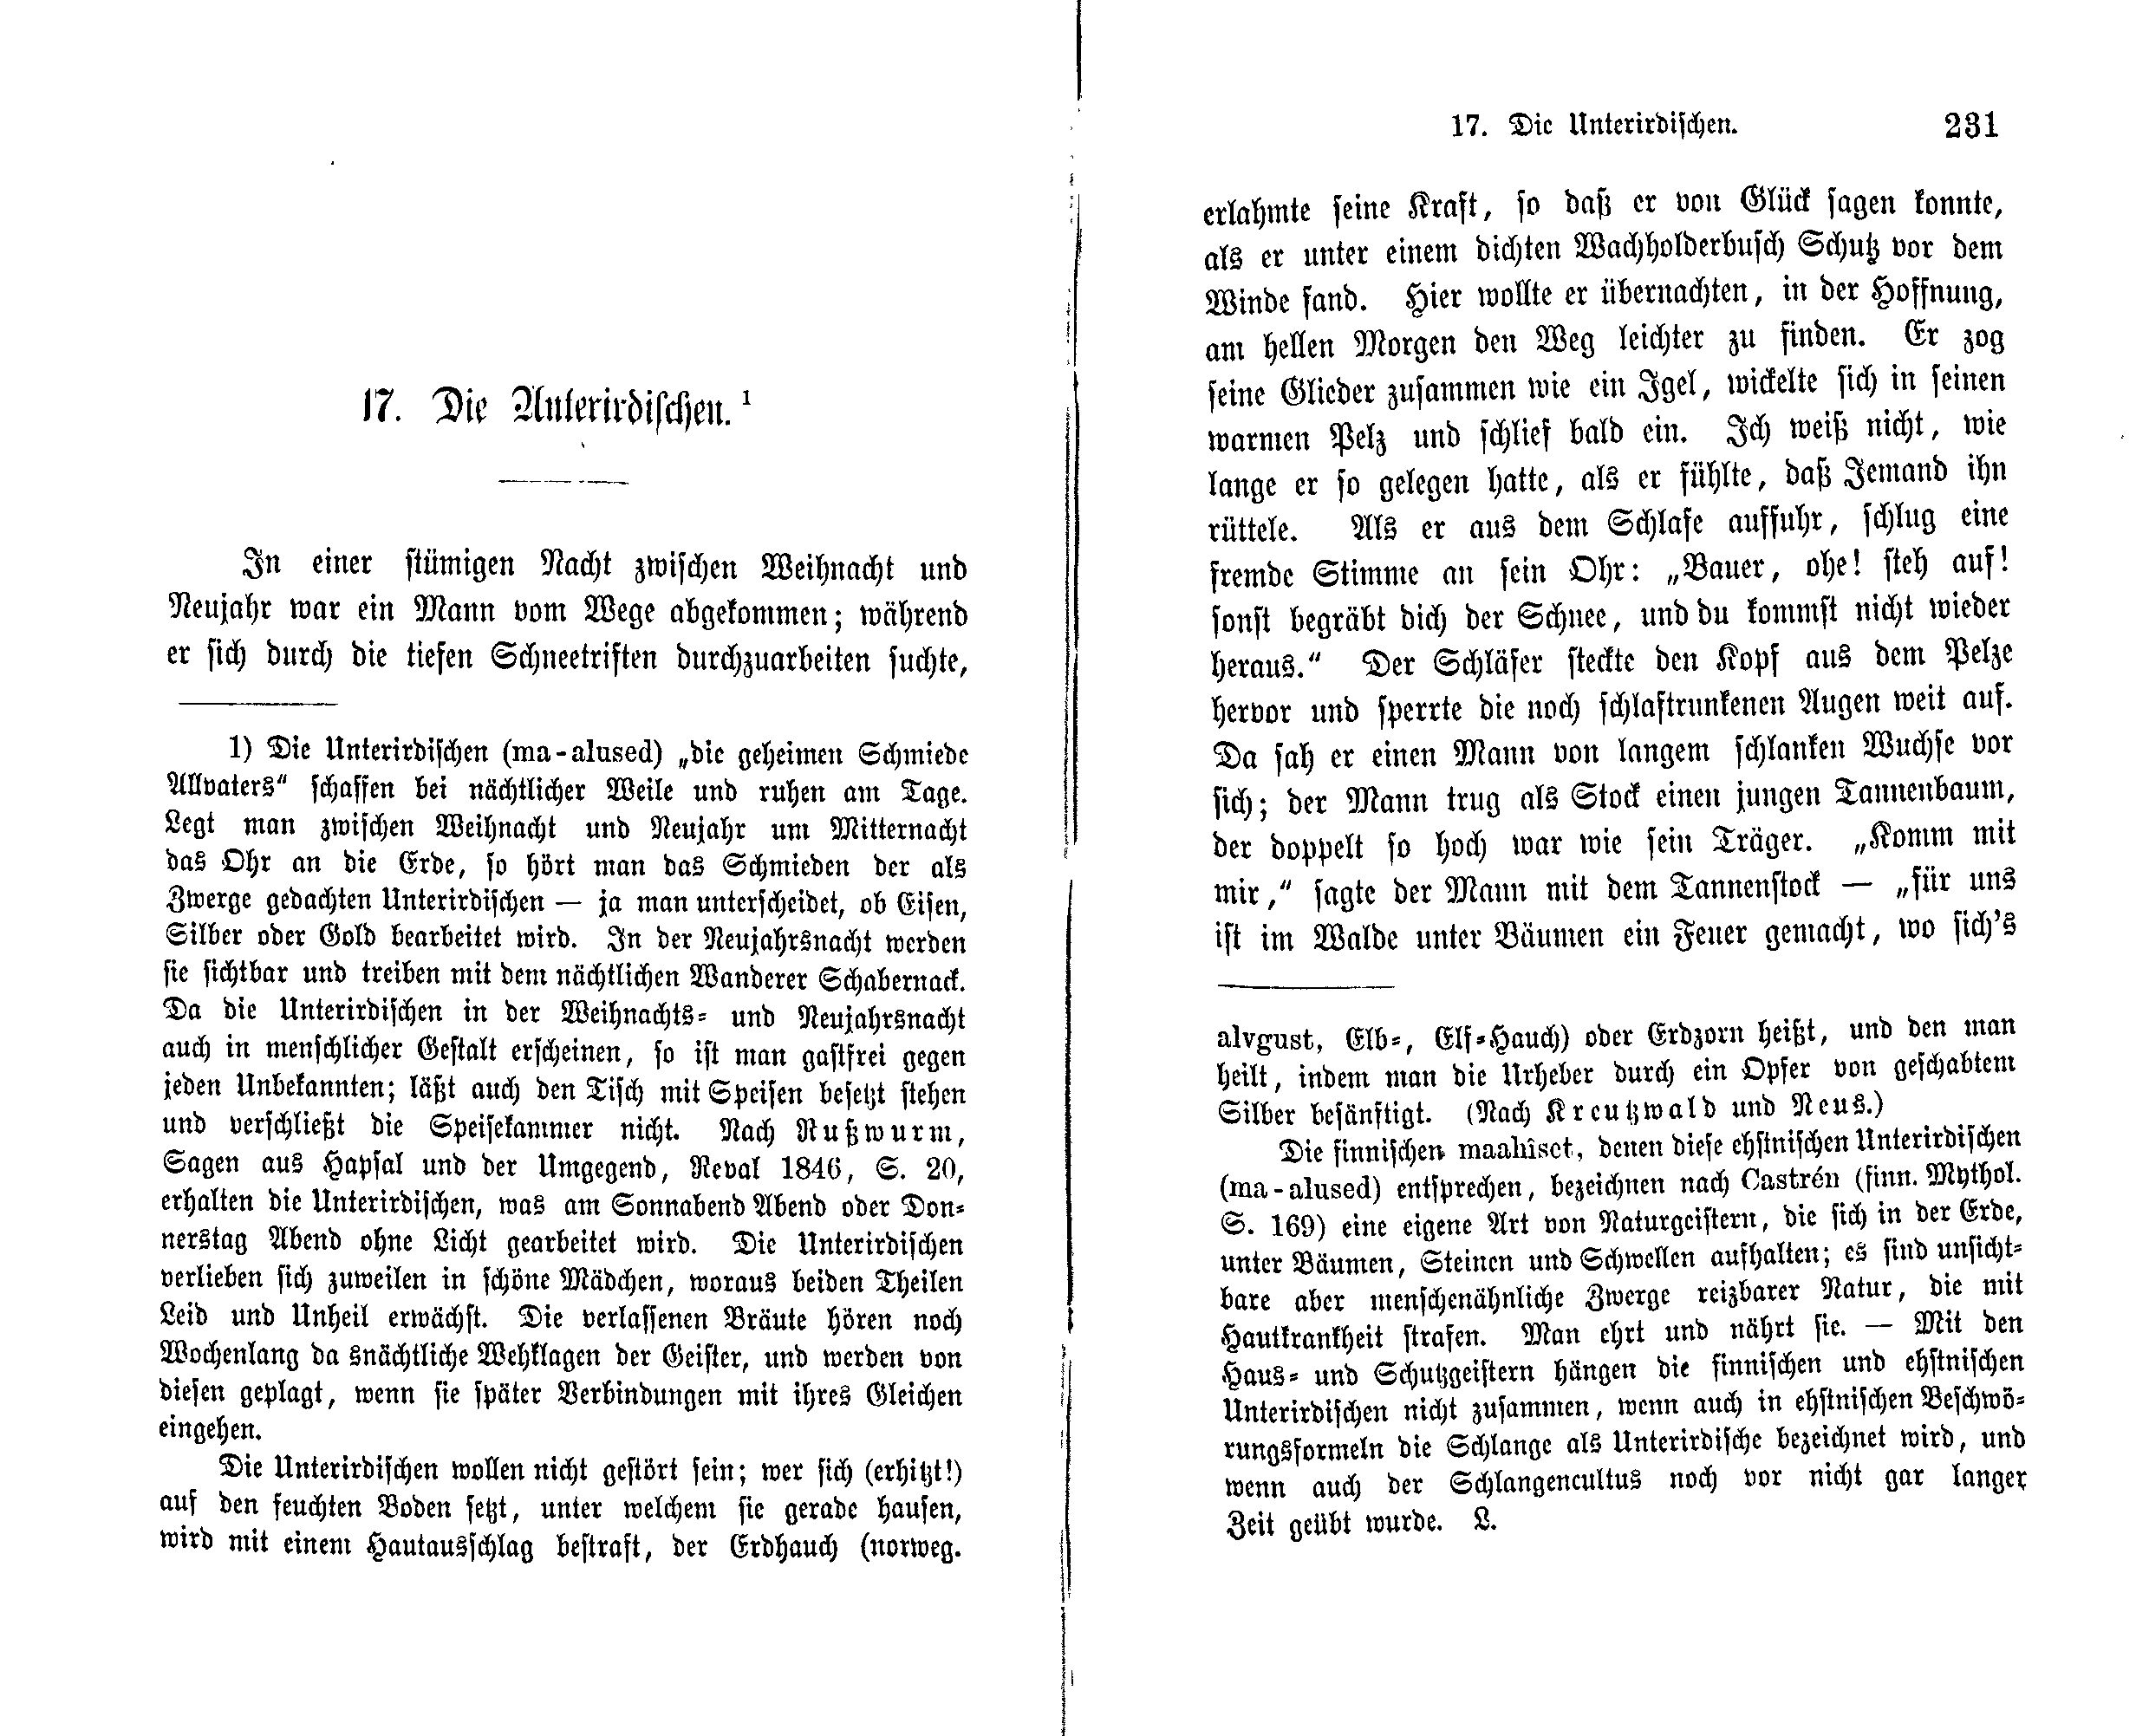 Die Unterirdischen (1869) | 1. (230-231) Main body of text